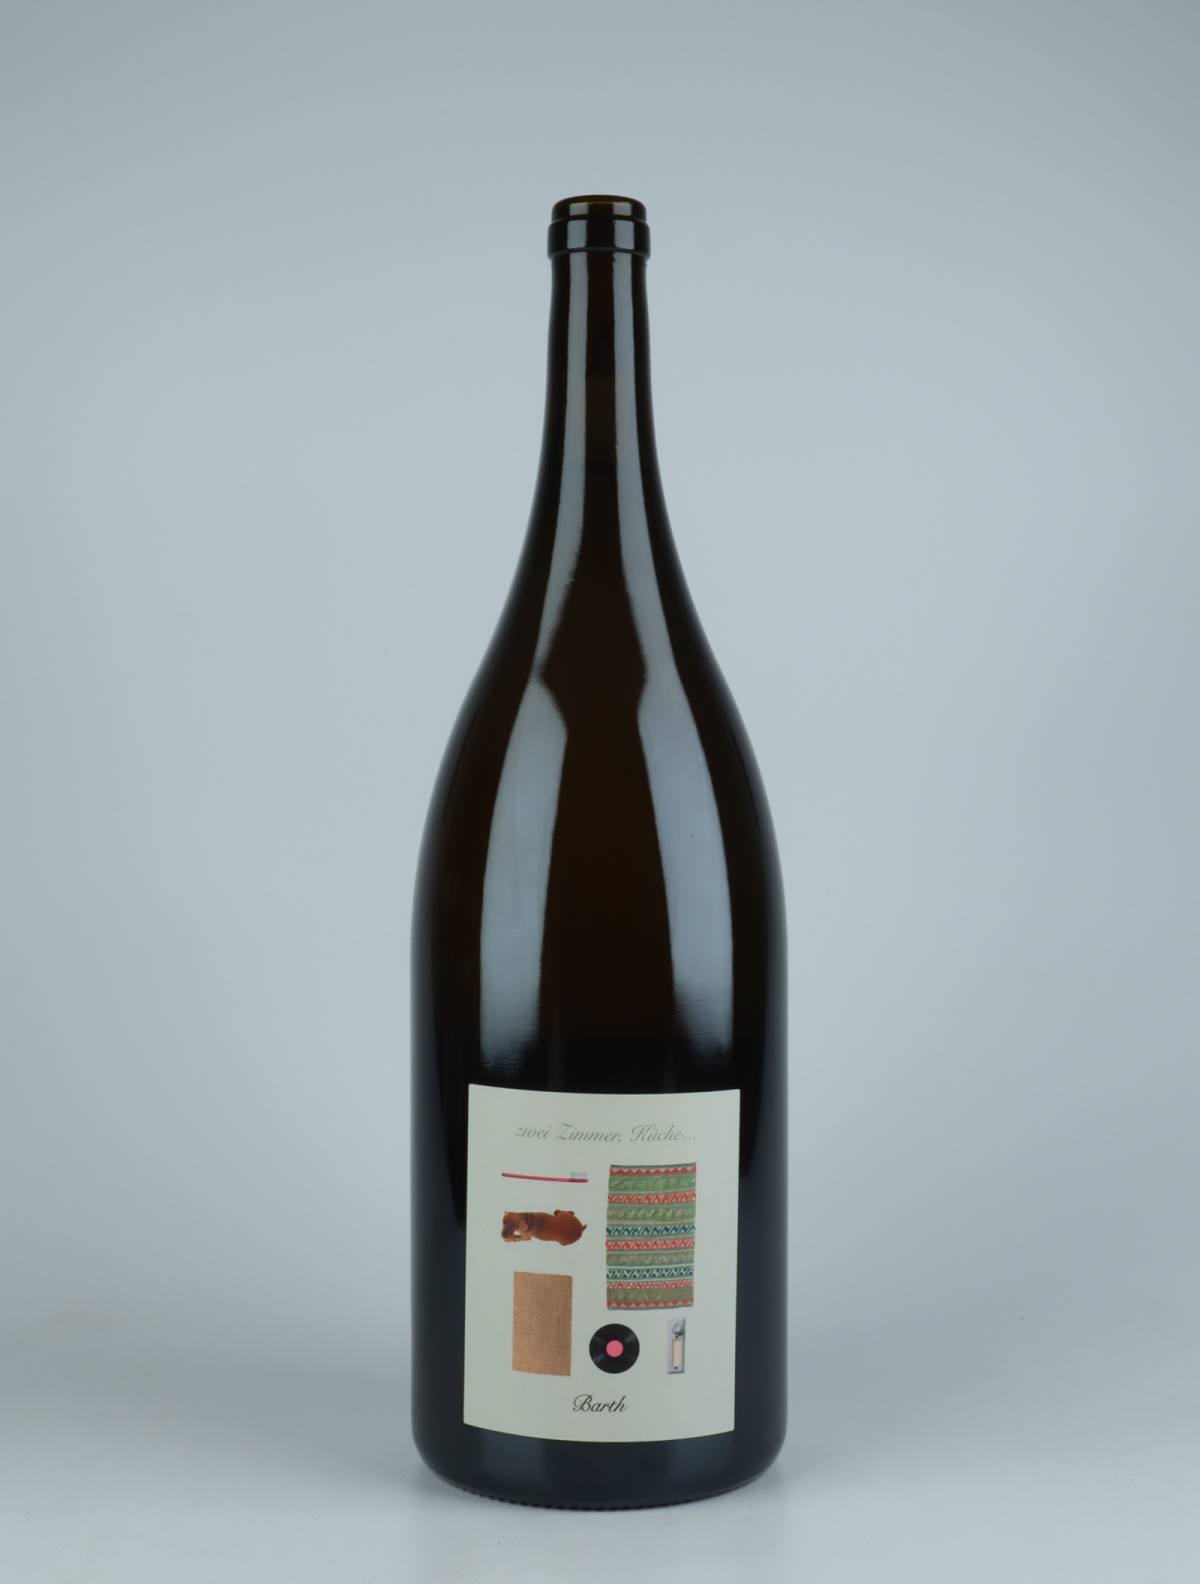 A bottle 2020 Zwei Zimmer, Küche, Barth White wine from Christopher Barth, Rheinhessen in Germany